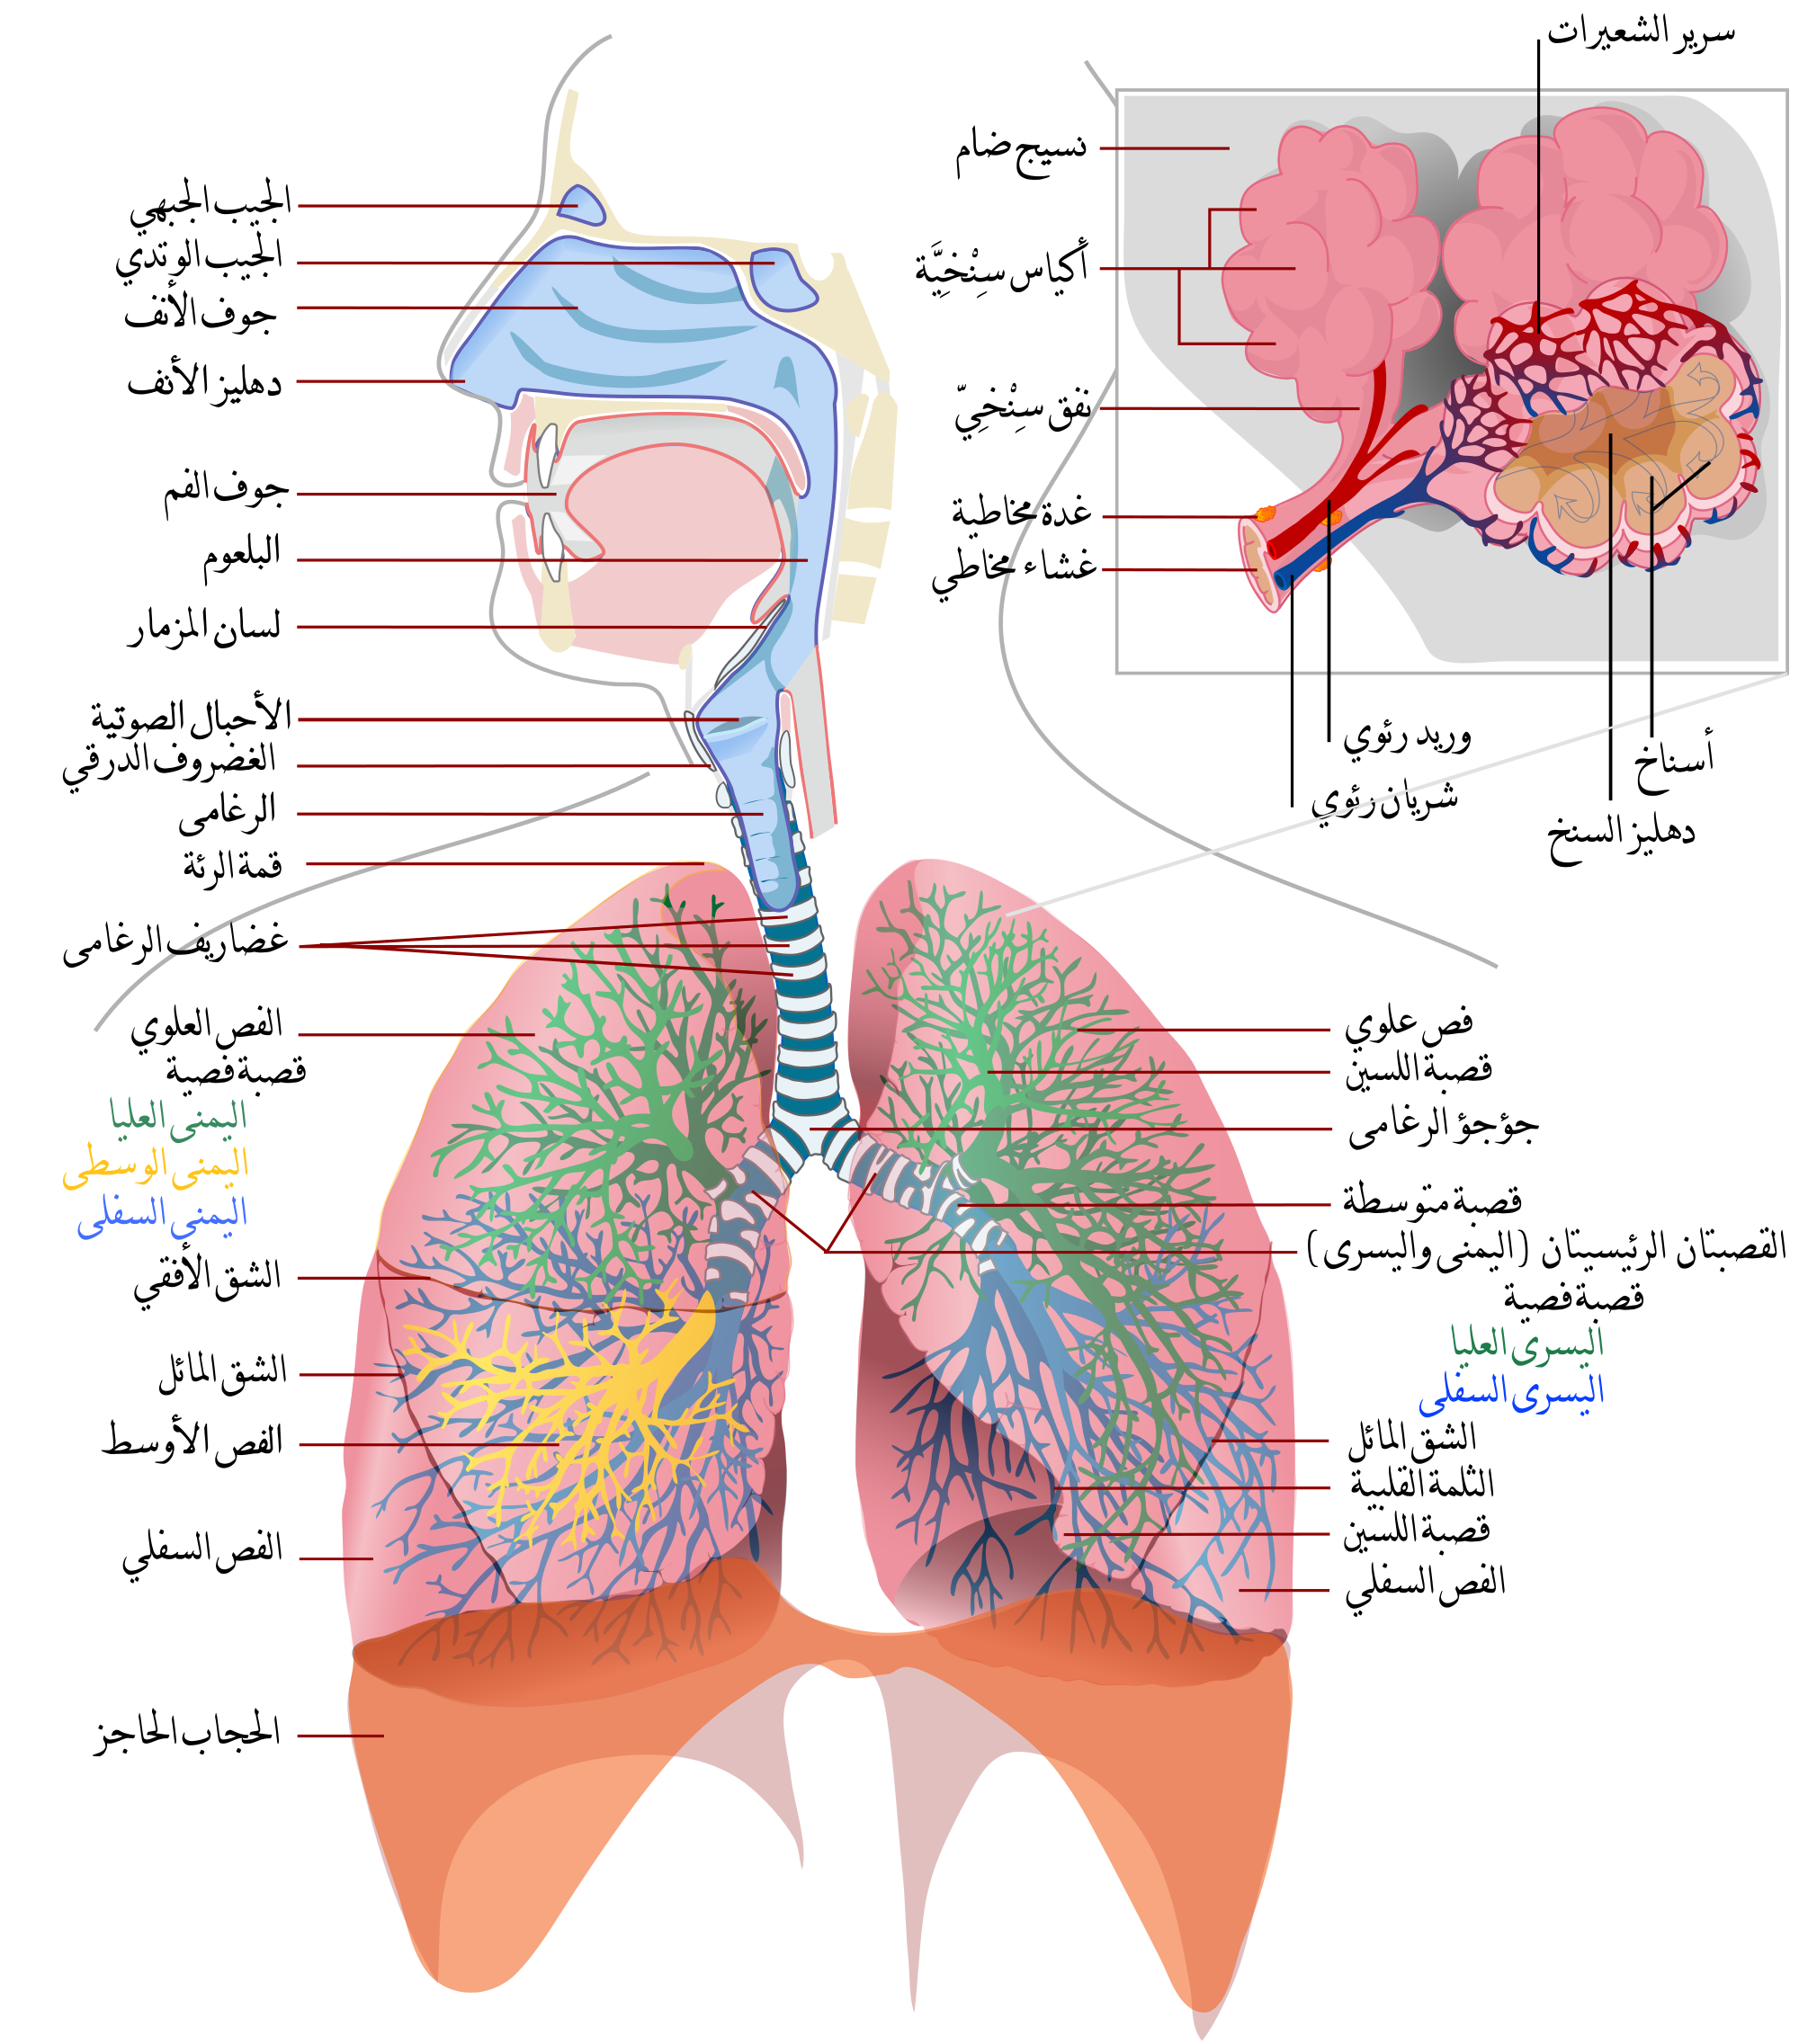 مقال علمي عن الجهاز التنفسي ،مكونات الجهاز التنفسي ، عمل الجهاز التنفسي،ال